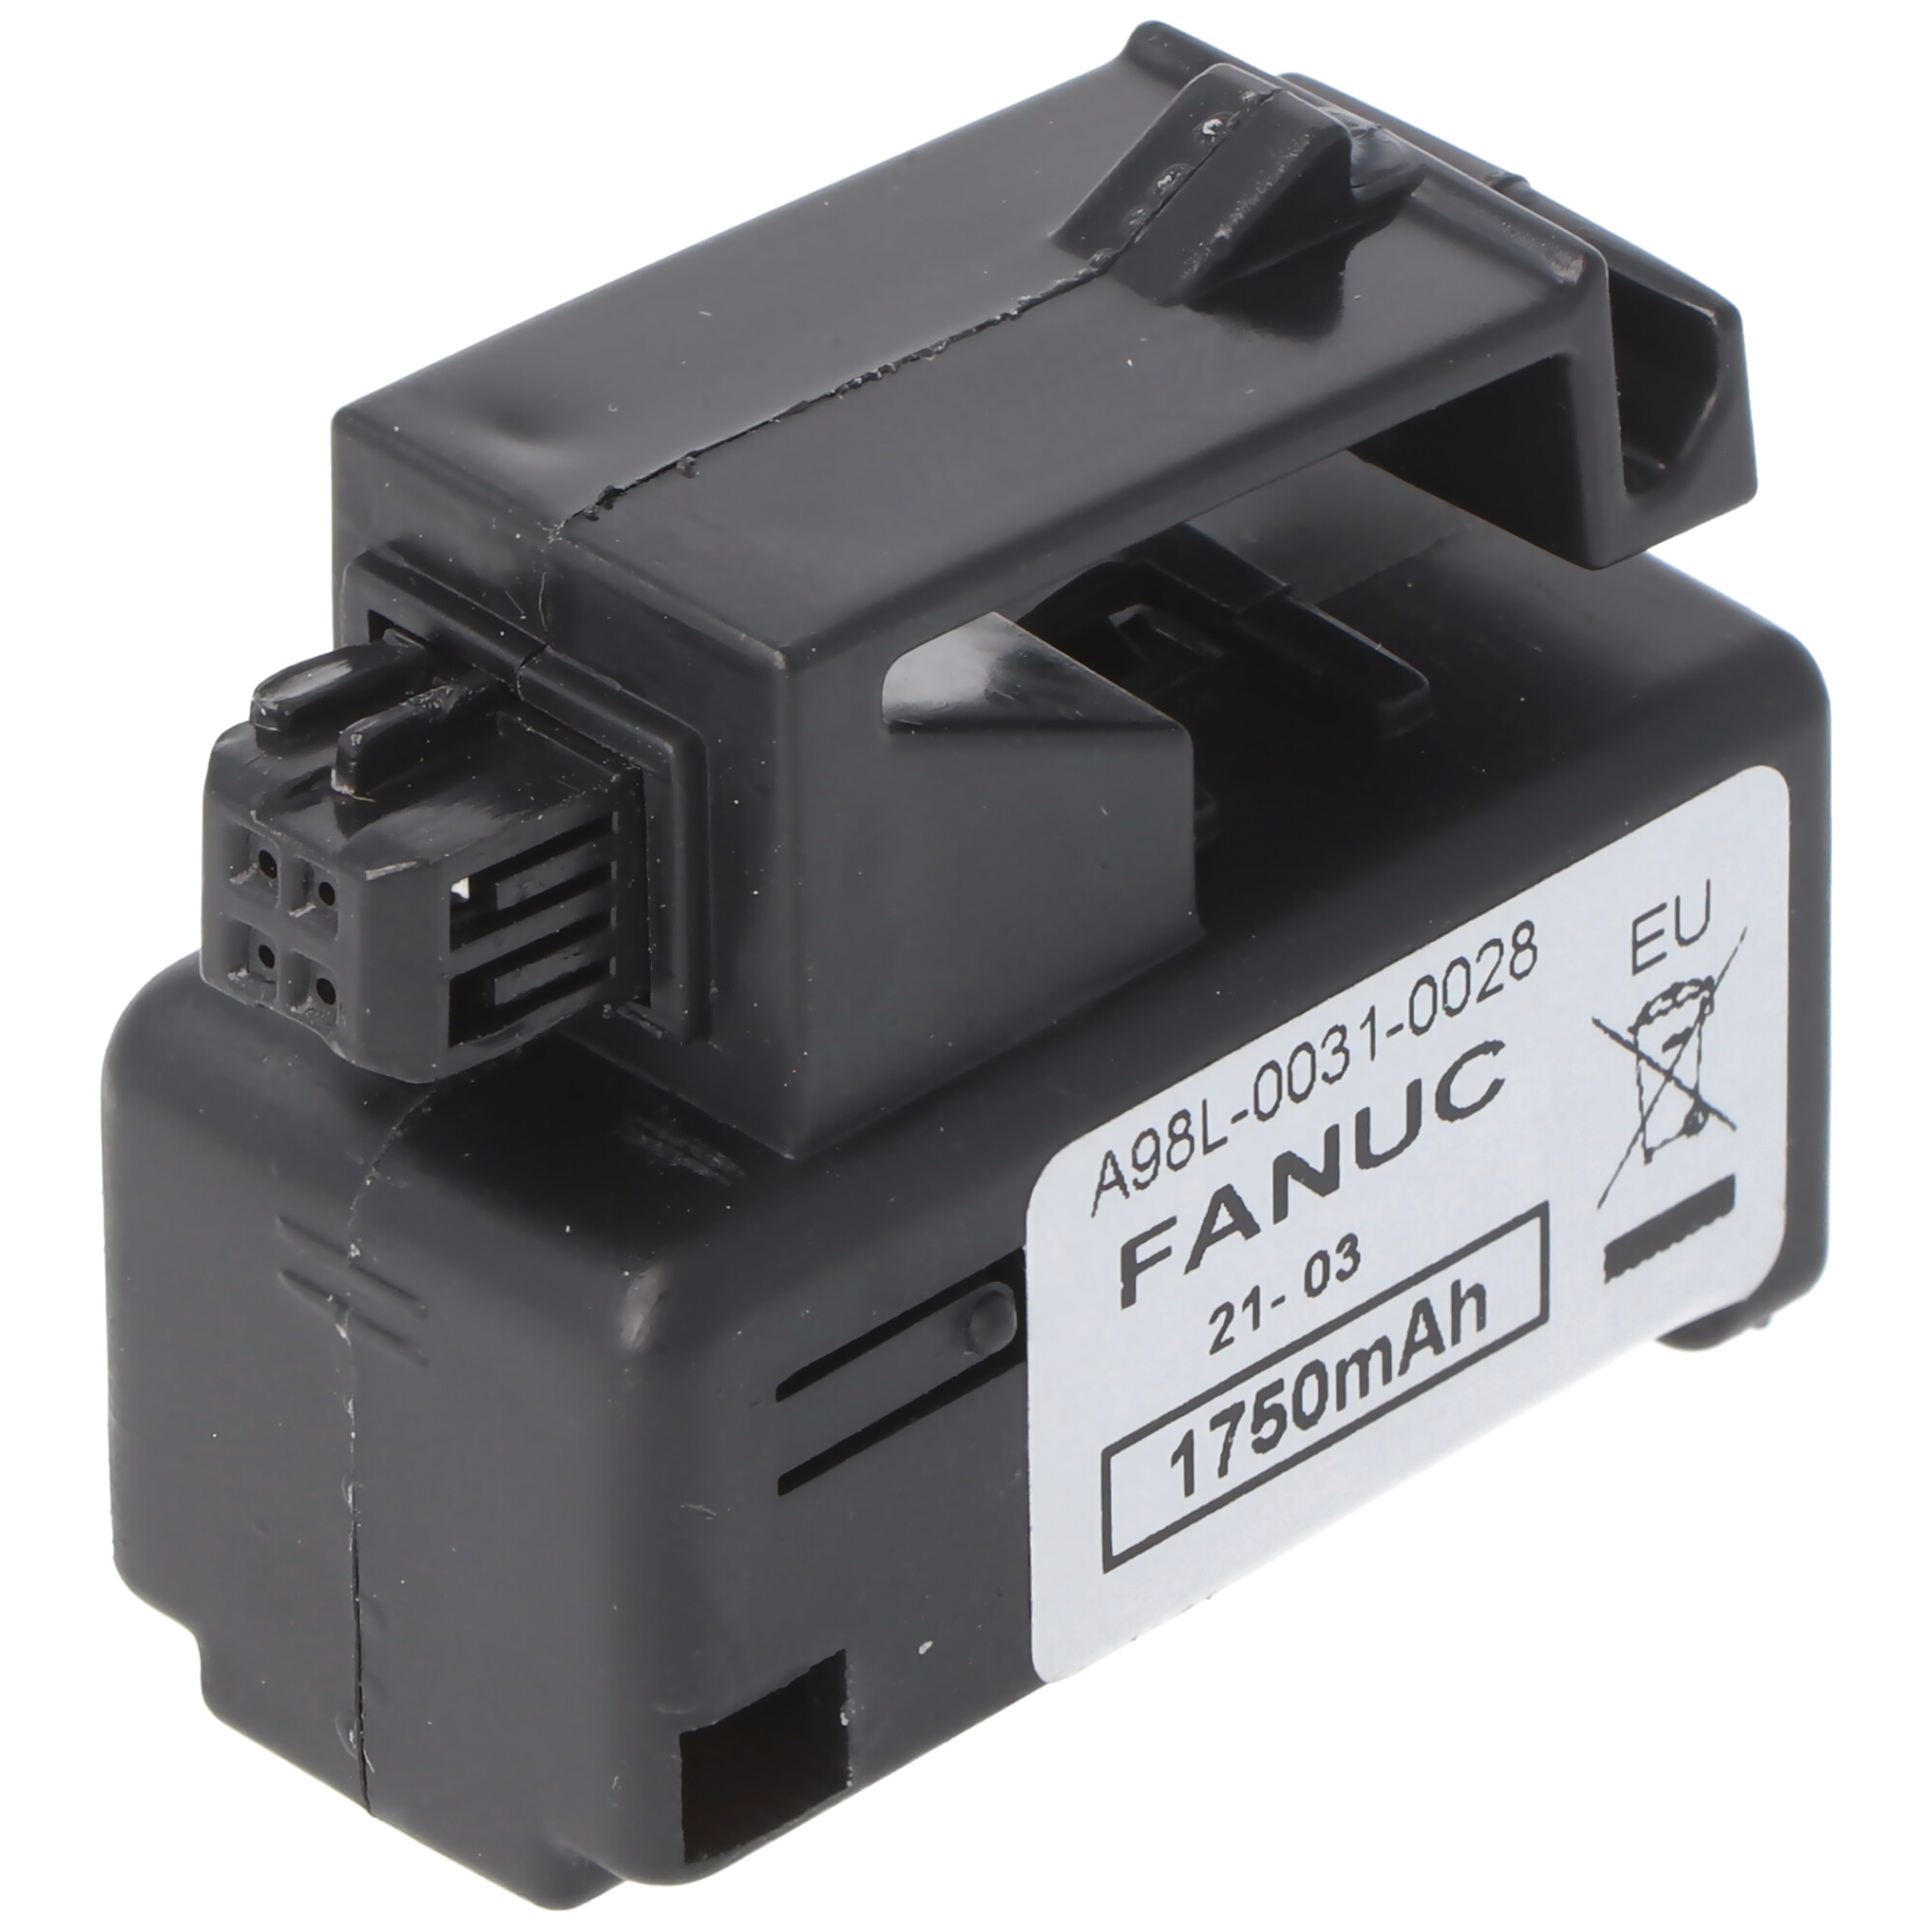 Speicherbatterie 3V passend für GE FANUC A98L-0031-0028 Batterie A02B-0323-K102